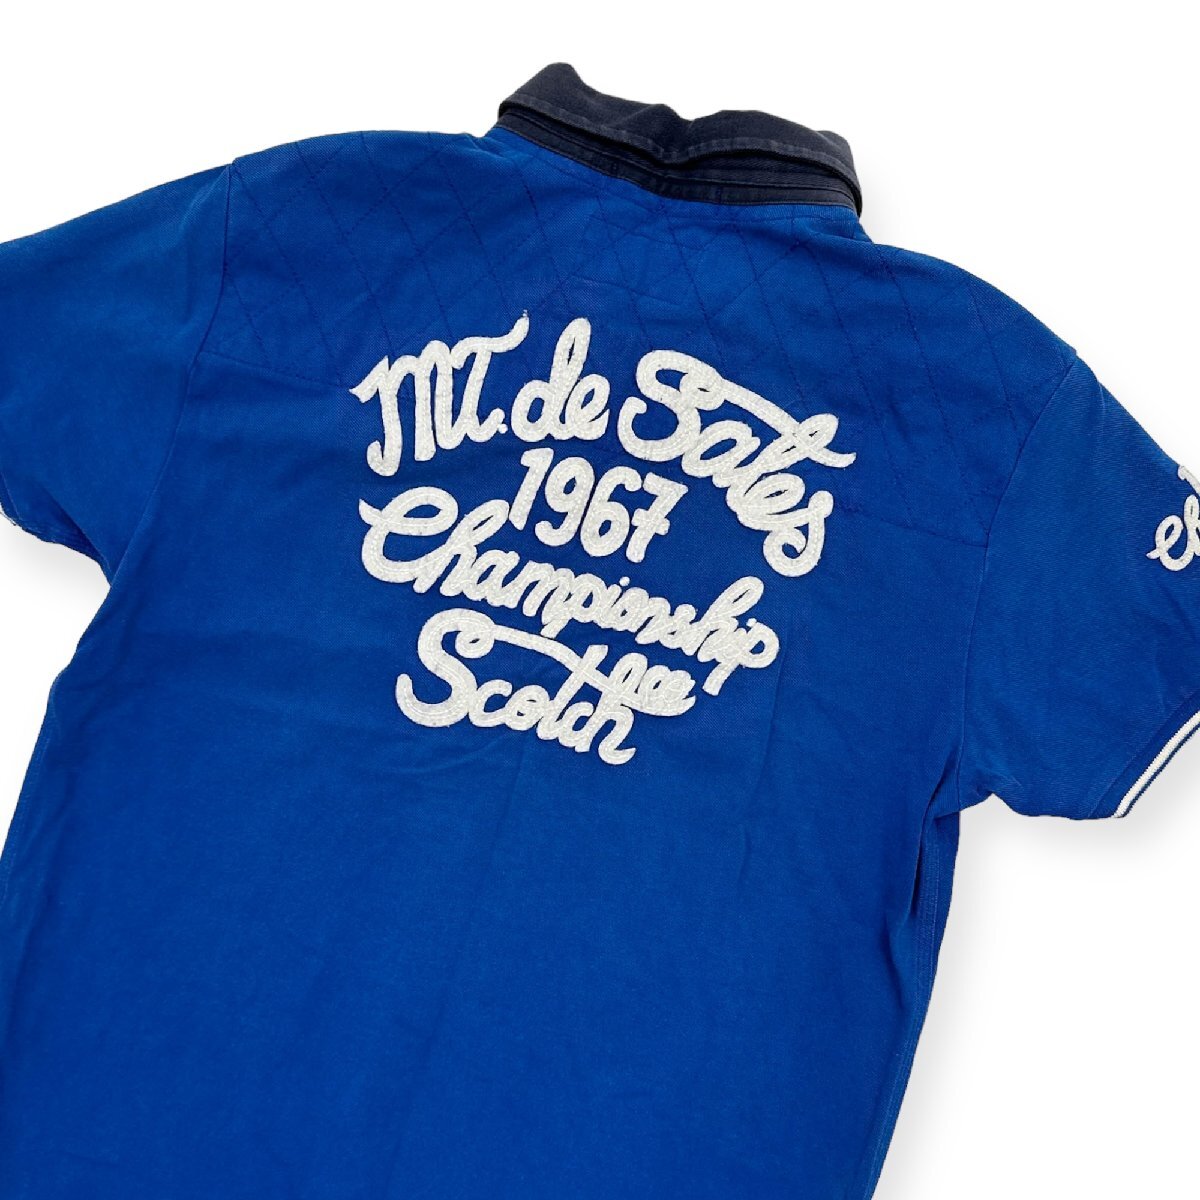 SCOTCH&SODA スコッチ&ソーダ BIGワッペン刺繍付き 半袖 ラガーシャツ サイズ M /青/ブルー/アメカジ_画像1